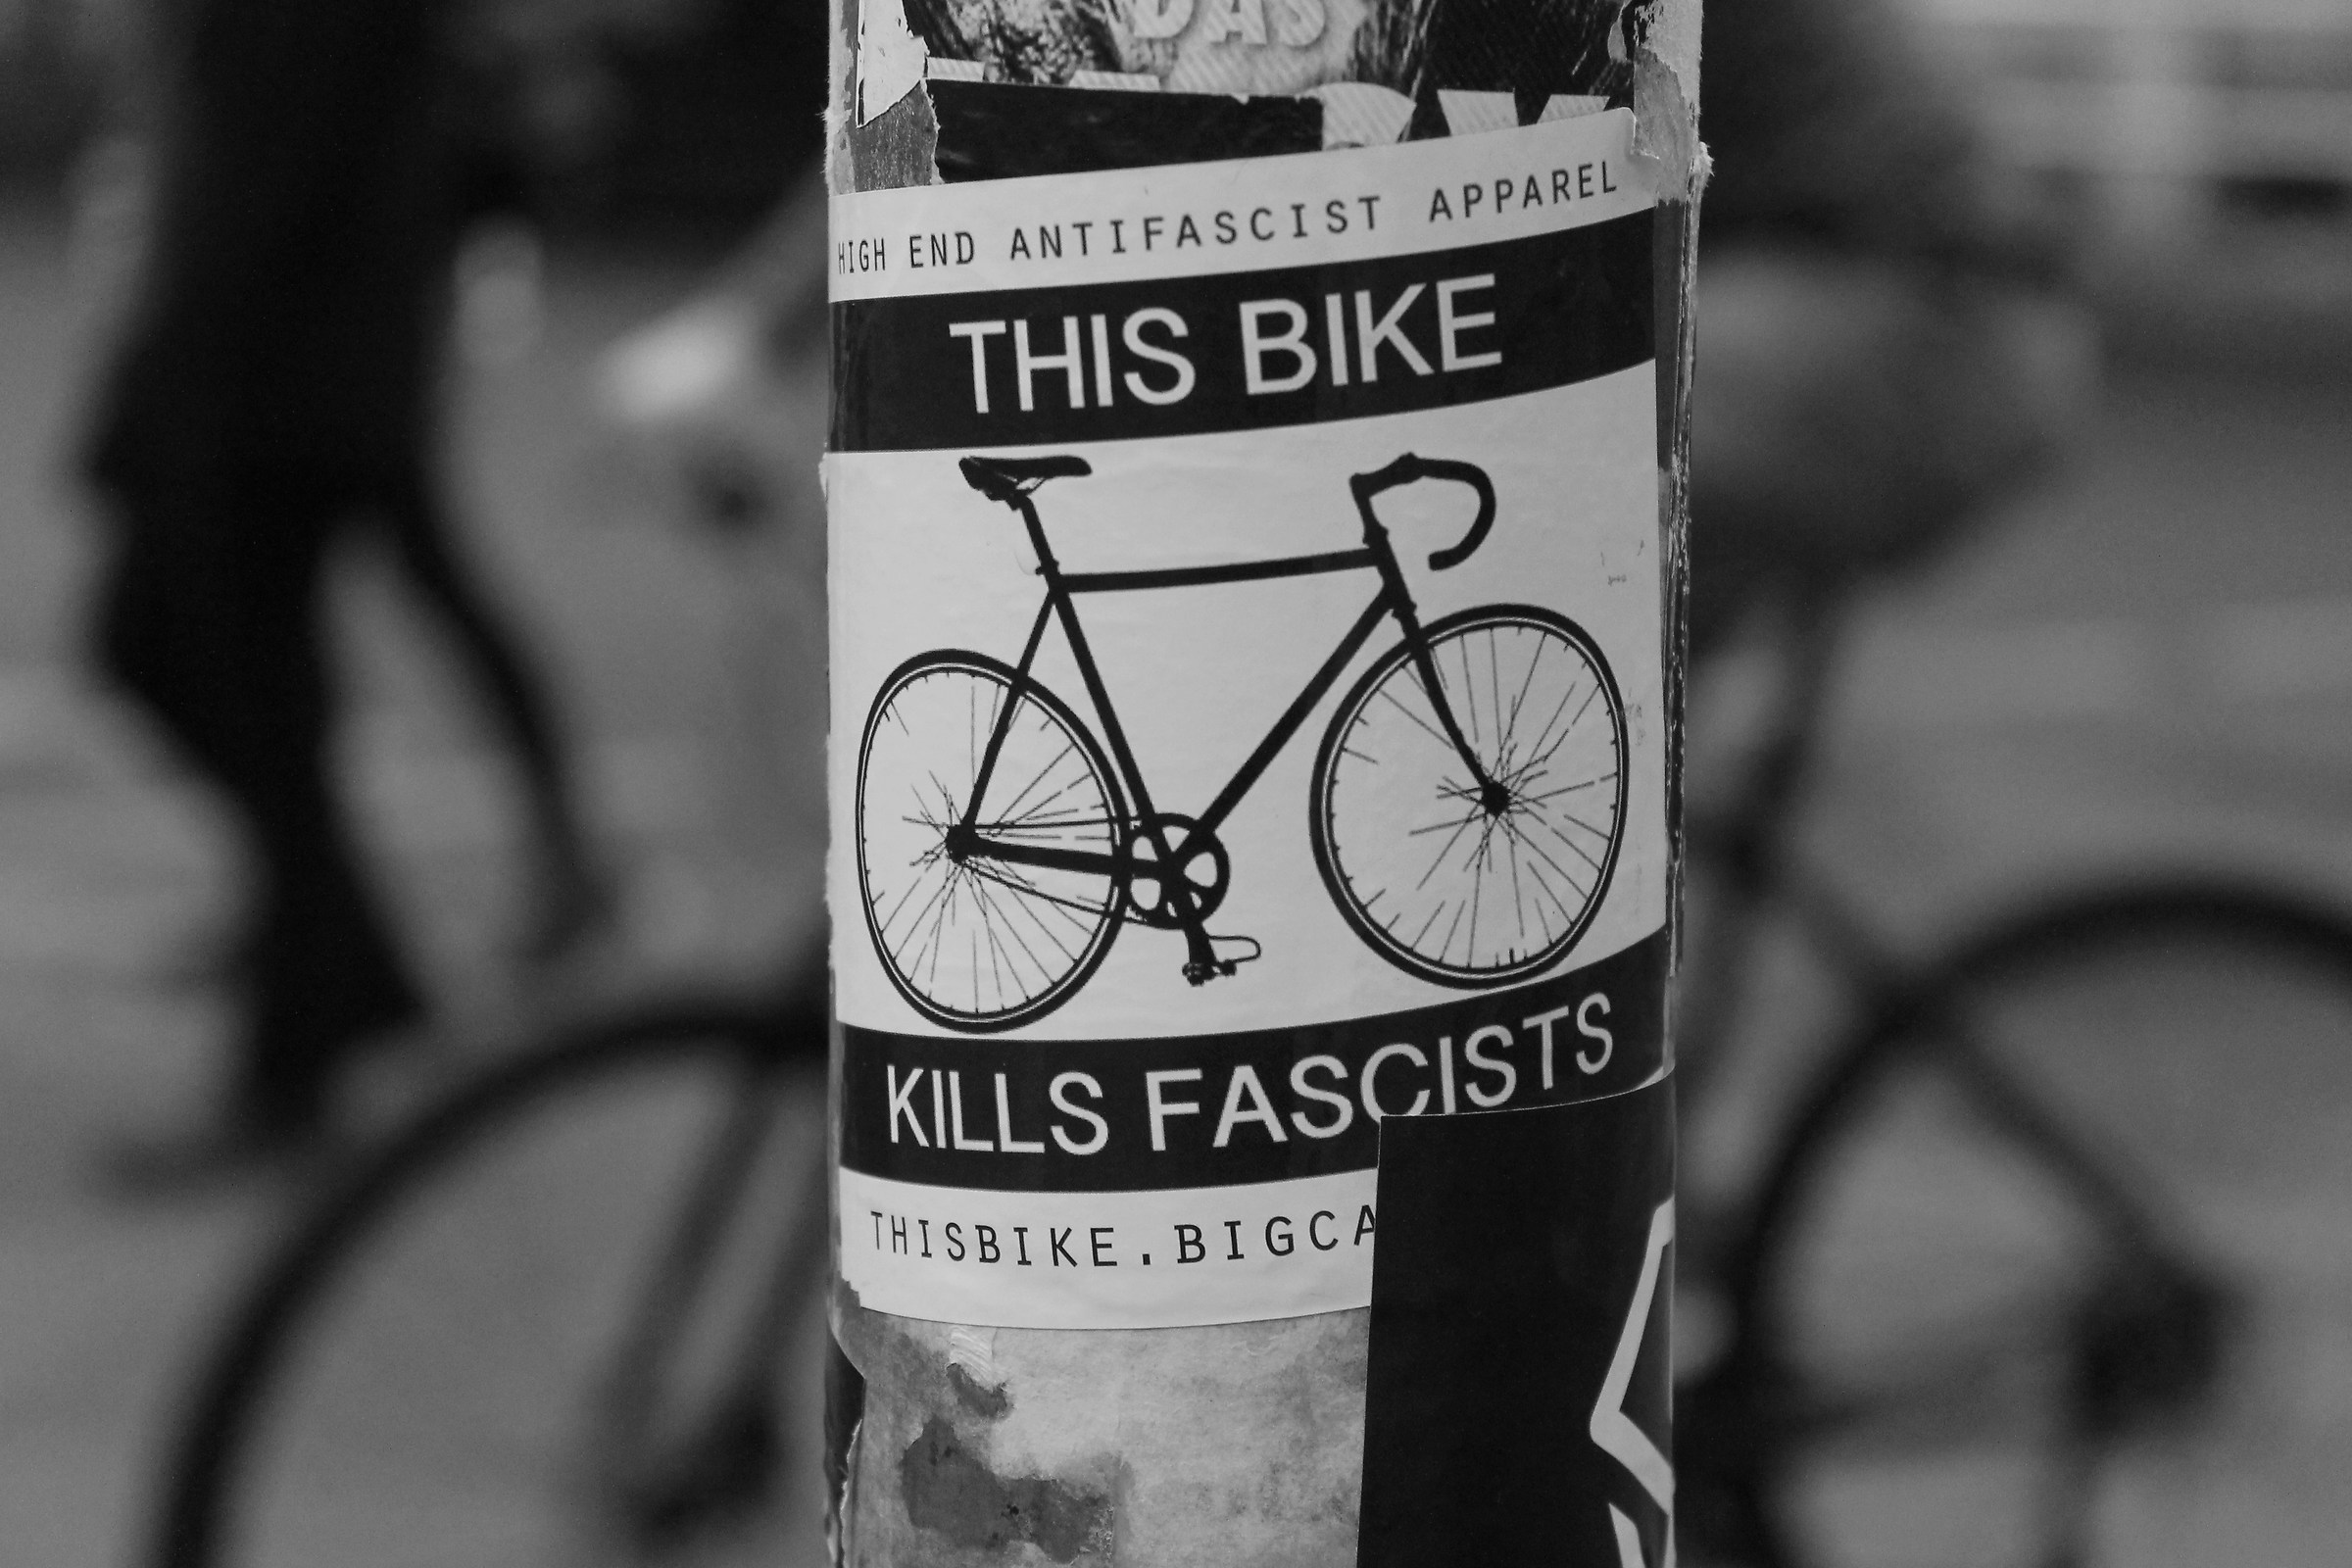 This bike kills fascists...